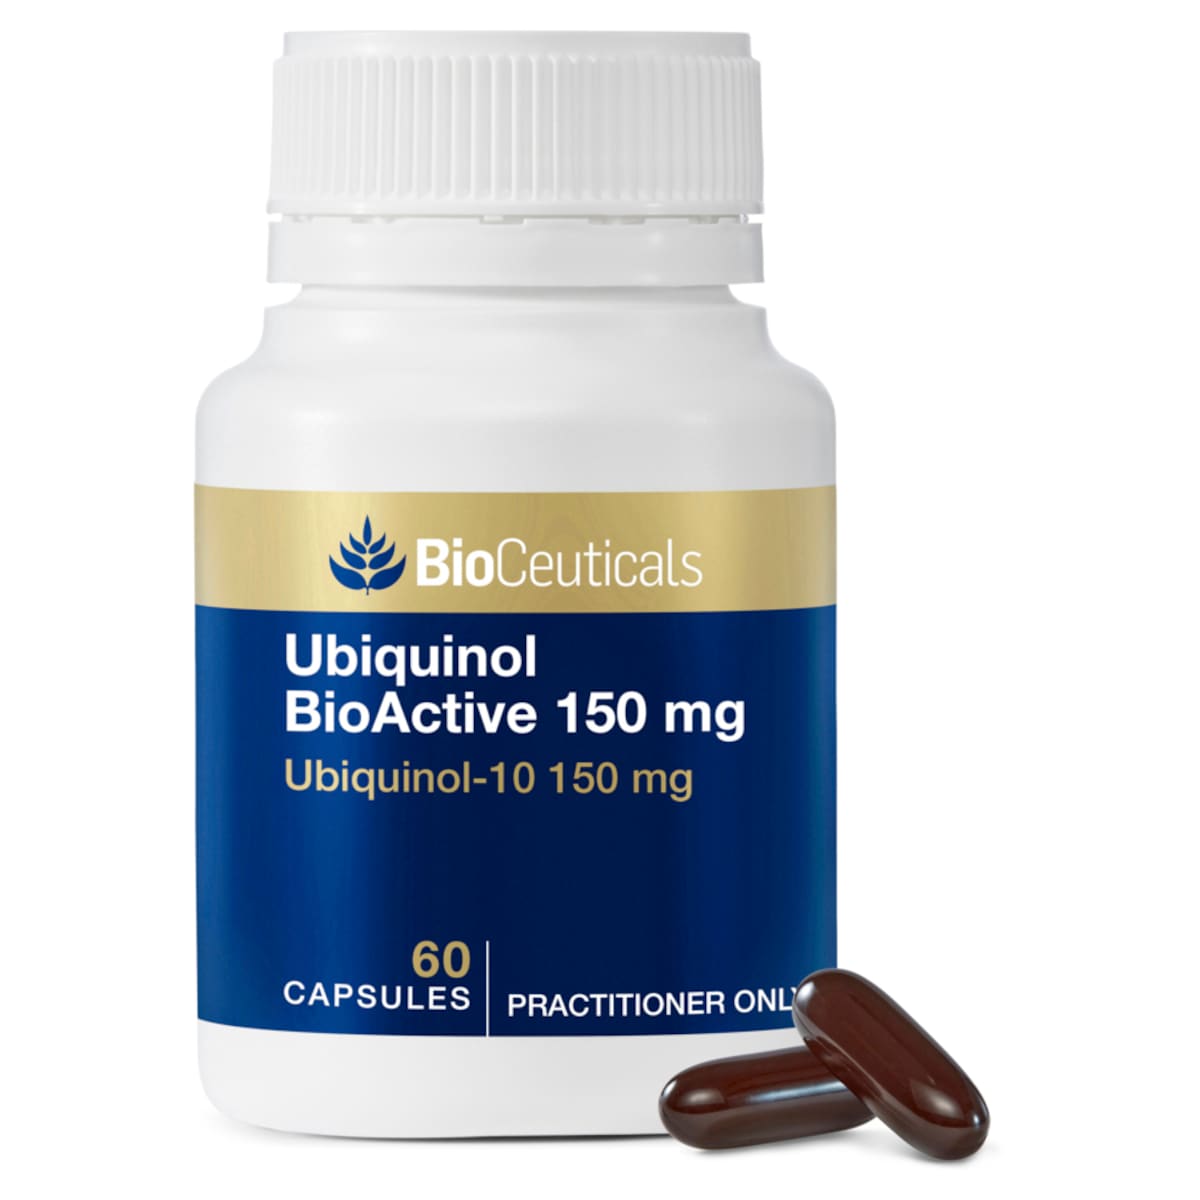 BioCeuticals Ubiquinol BioActive 150mg 60 Capsules Australia